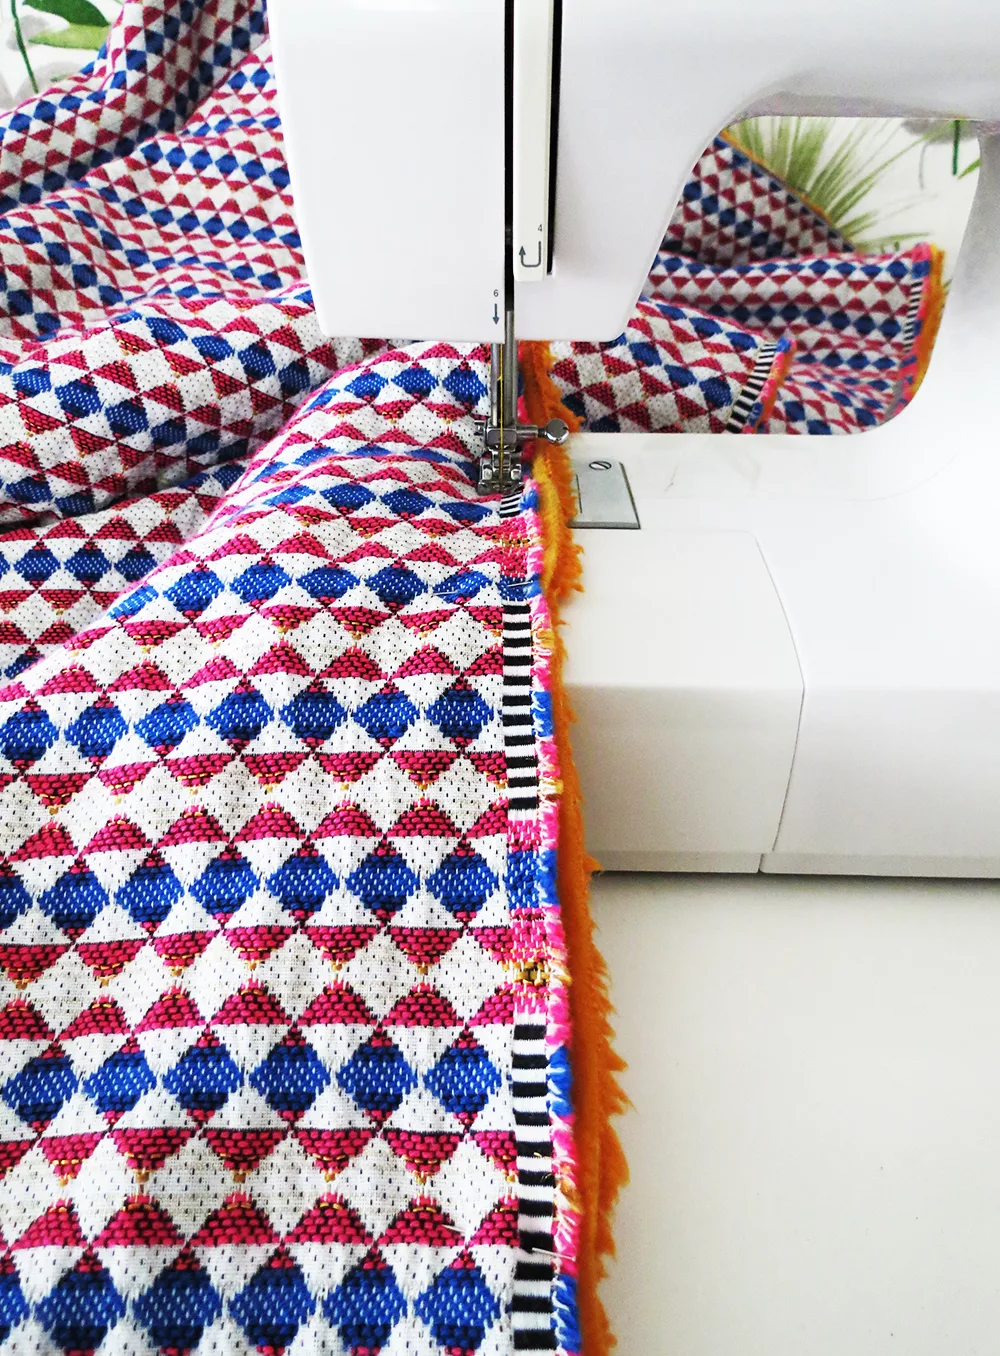 sewing blanket